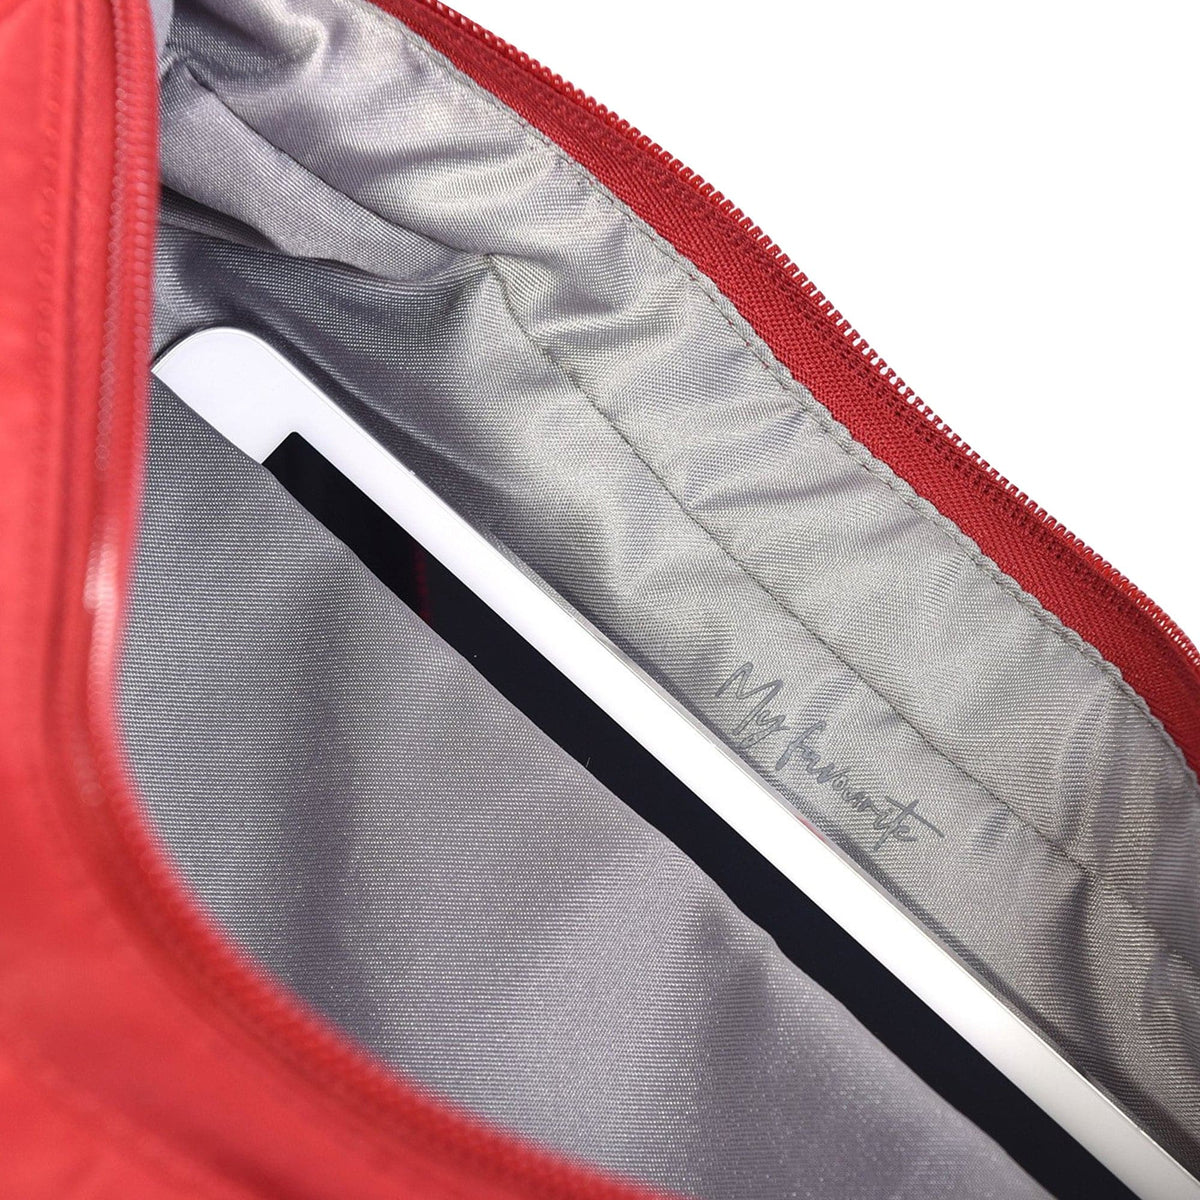 Hedgren Harper's RFID Shoulder Bag